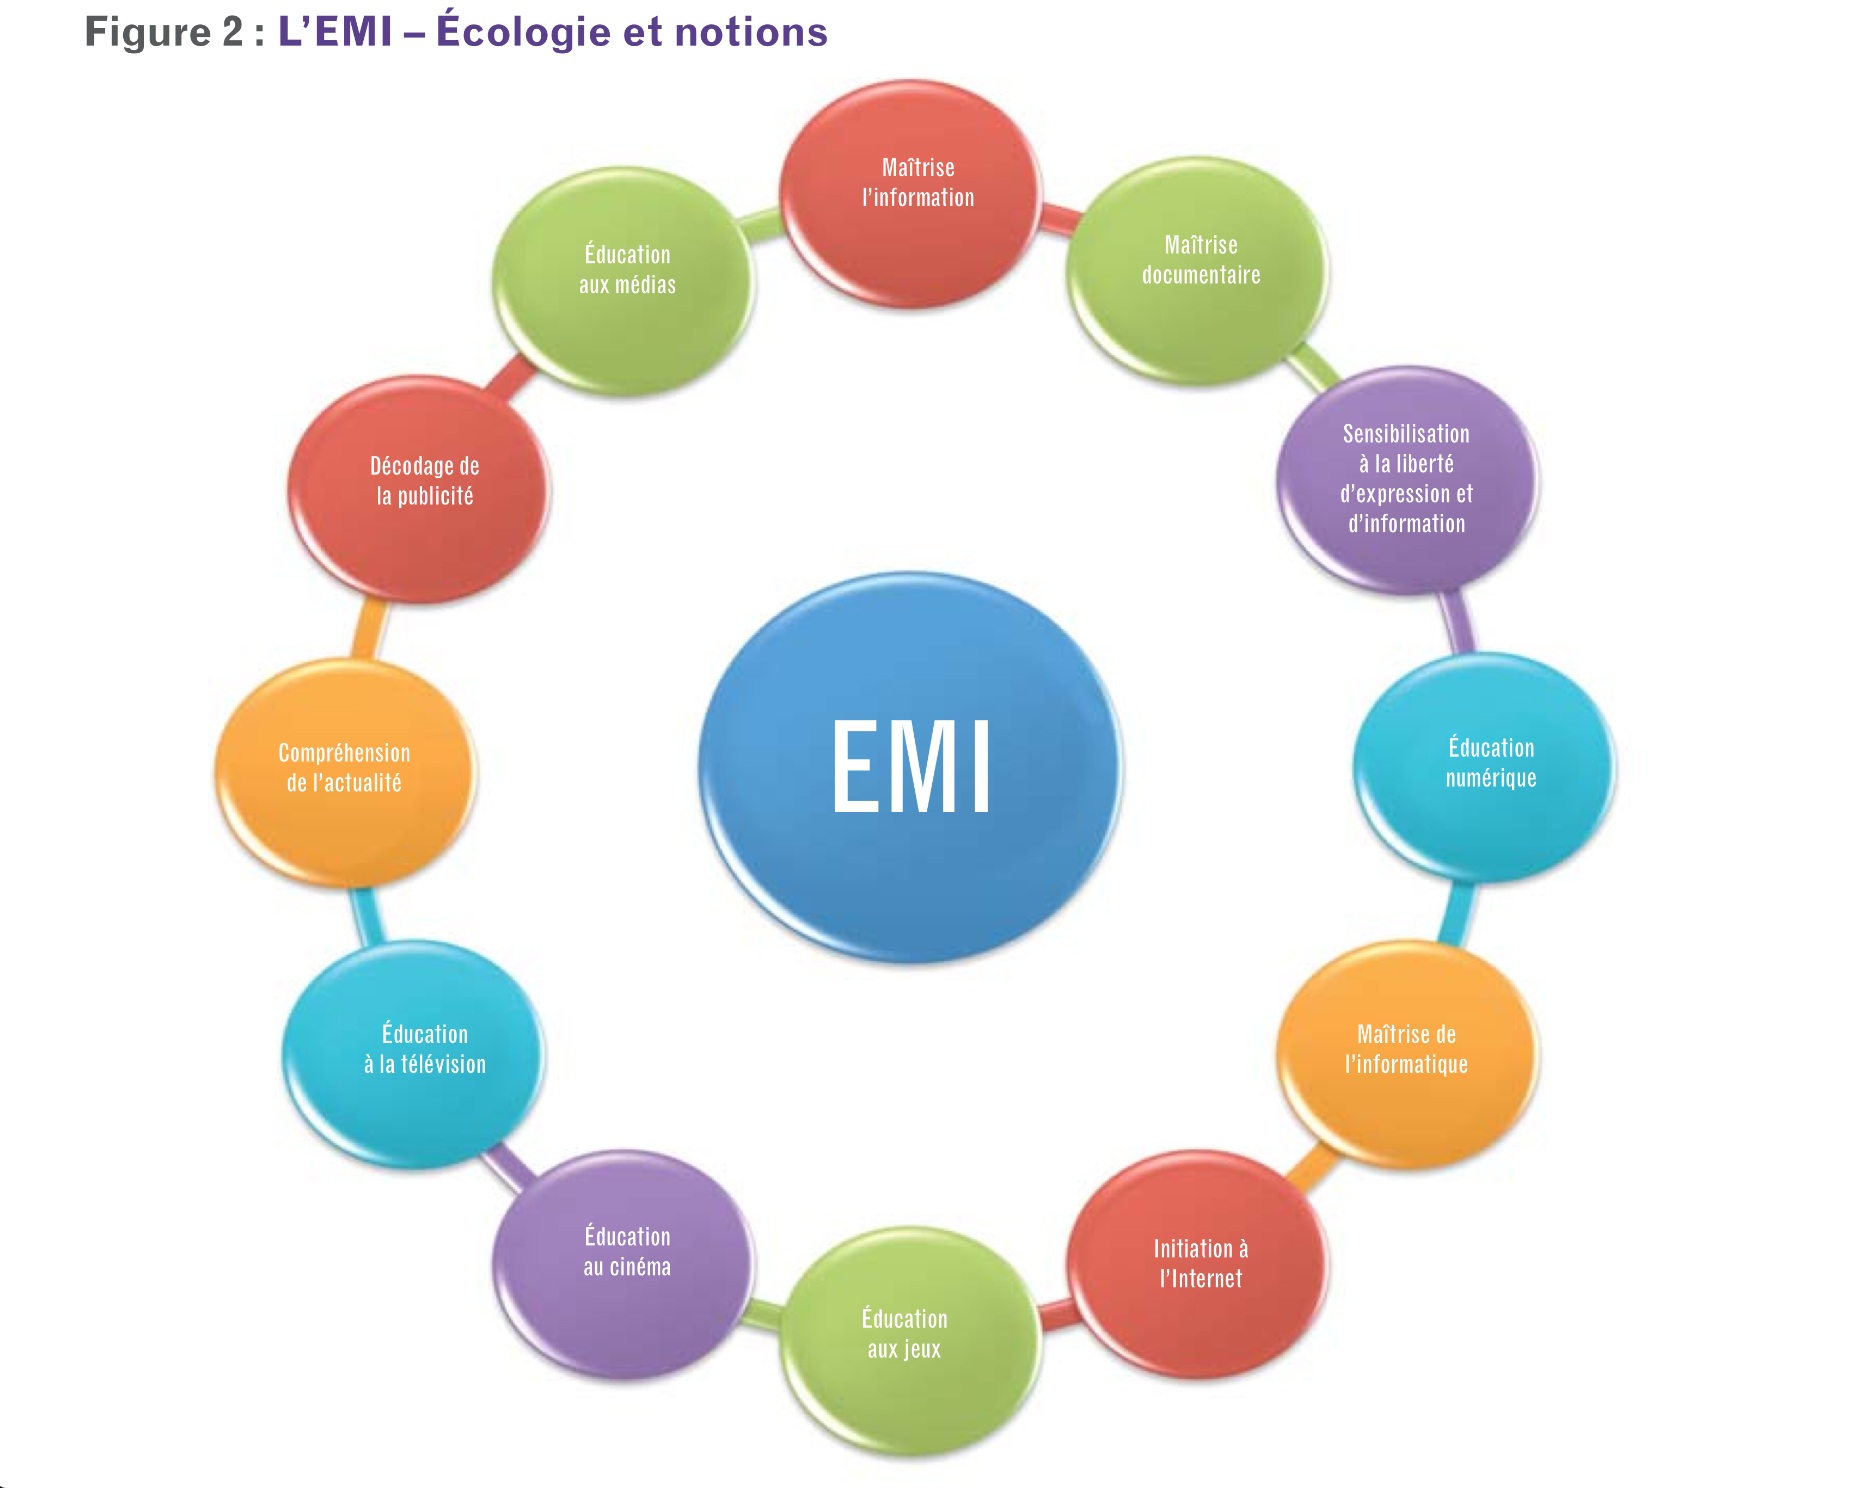 L'EMI - écologie et notions.jpg